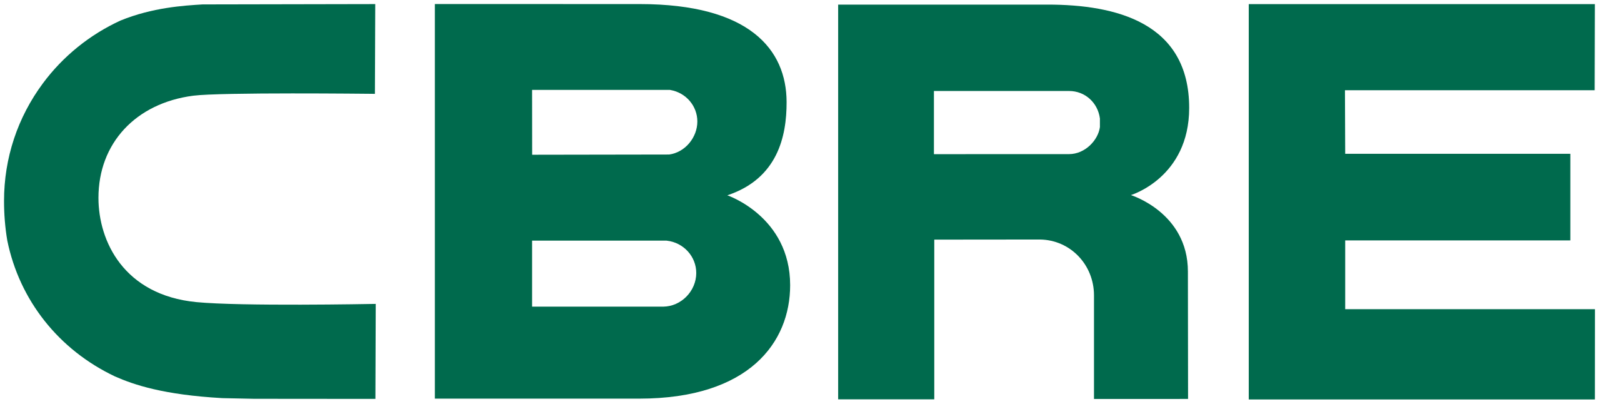 CBRE Group logo till 2021